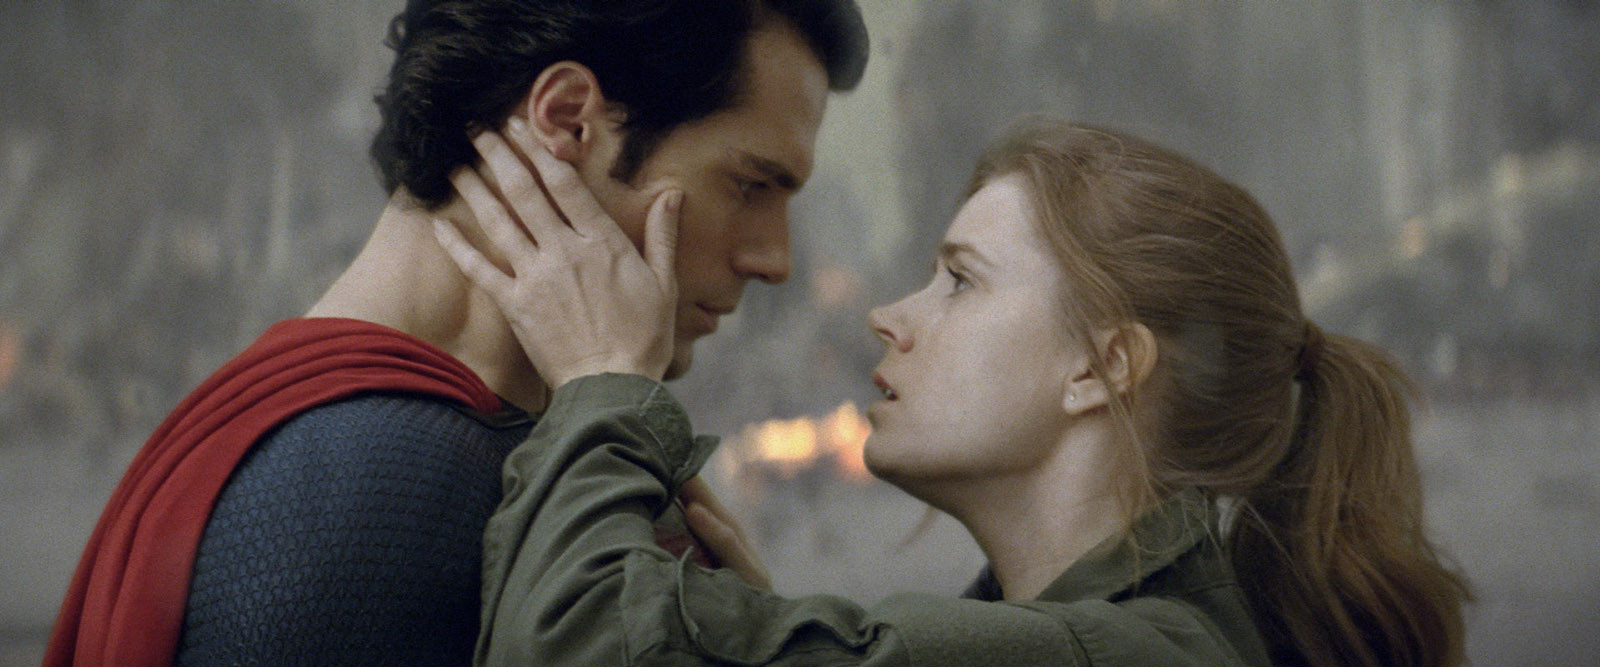 Henry Cavill, o atual Superman, está solteiro após um ano de namoro - Quem